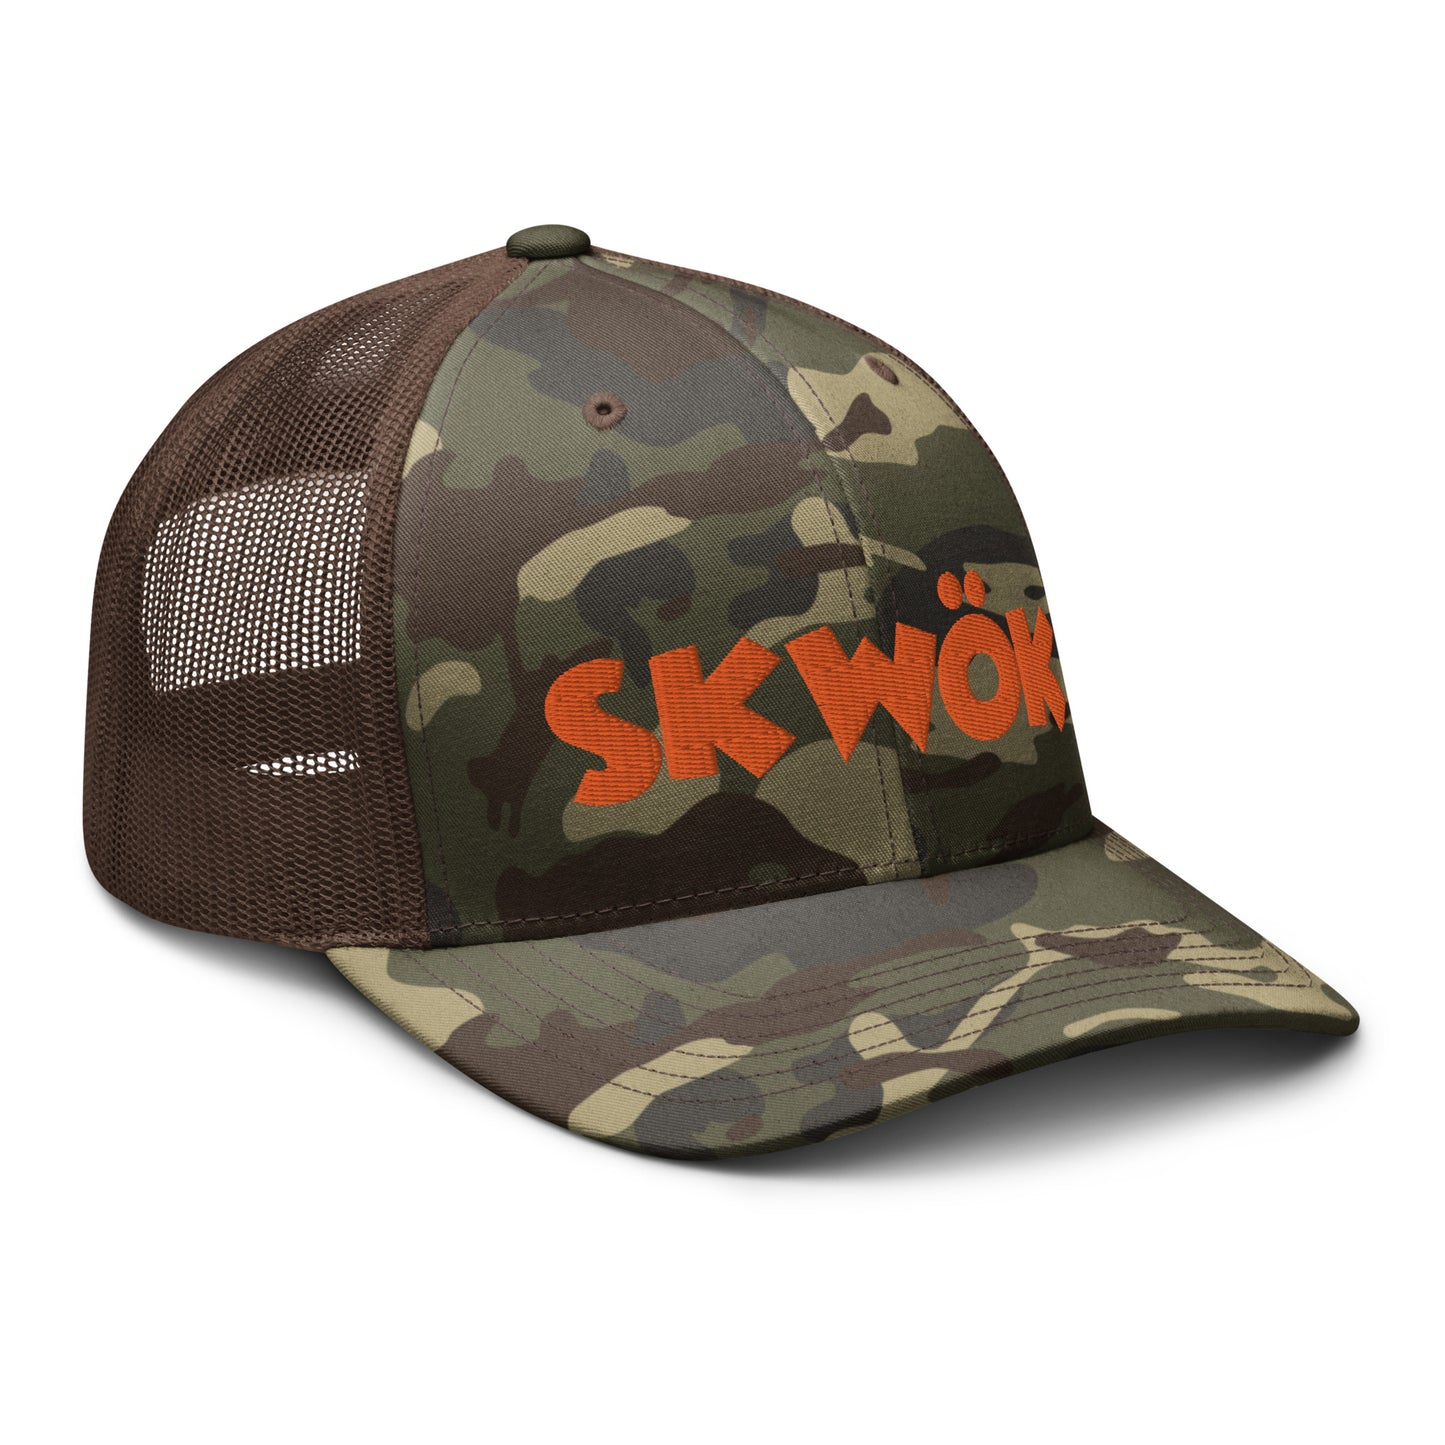 Skwok Brand / Hat / Traditional / OG Logo / 3D Puff / Camouflage / Orange